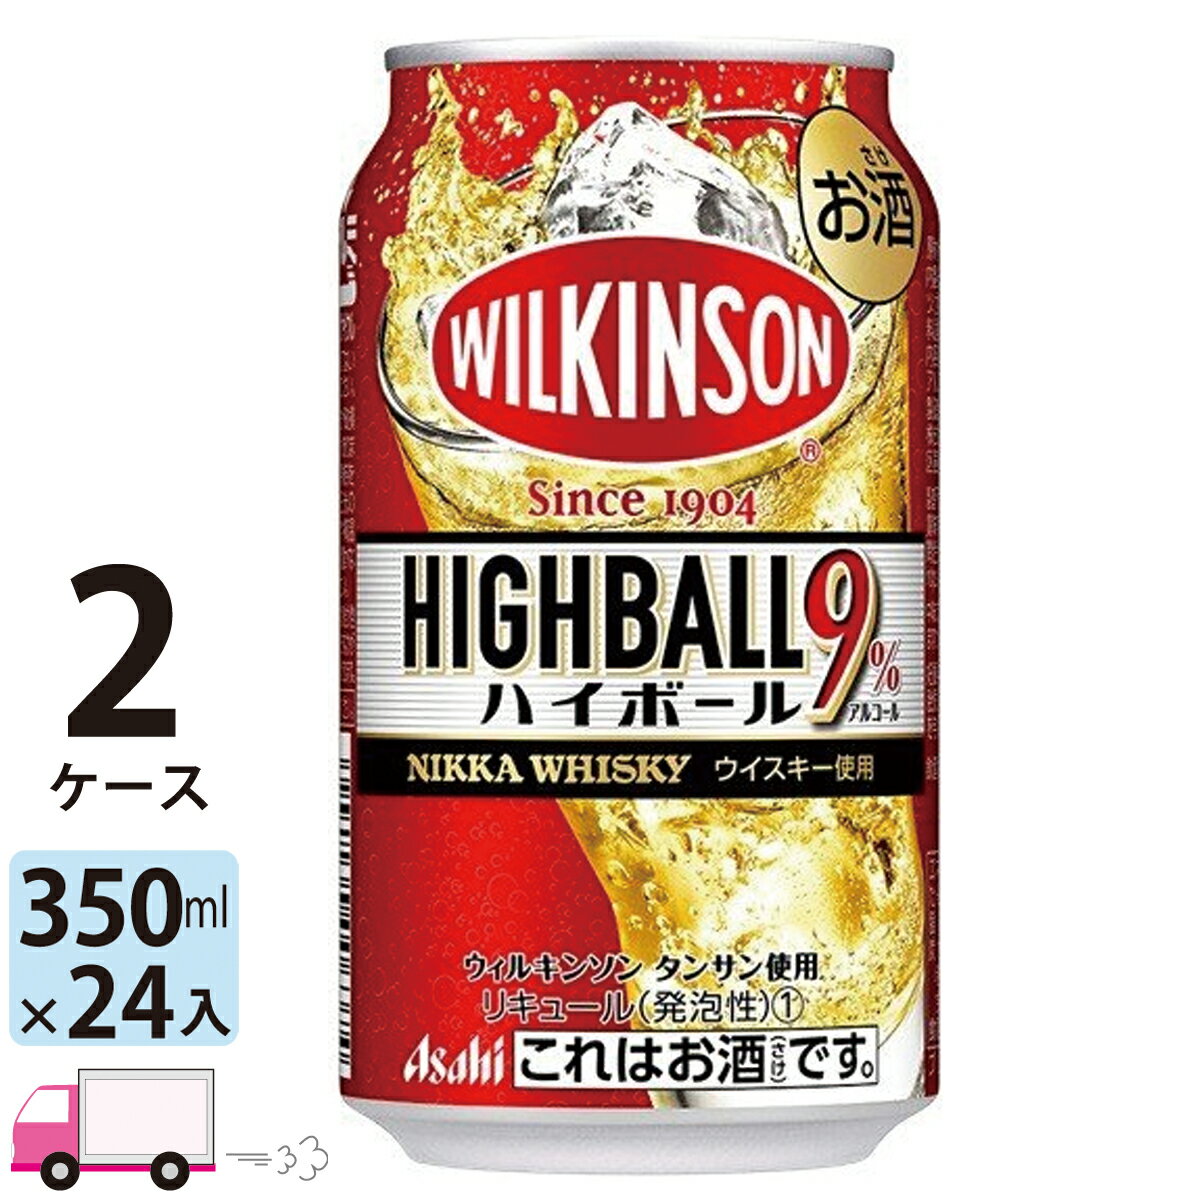 アサヒ ウィルキンソン ハイボール 350ml 24缶入 2ケース